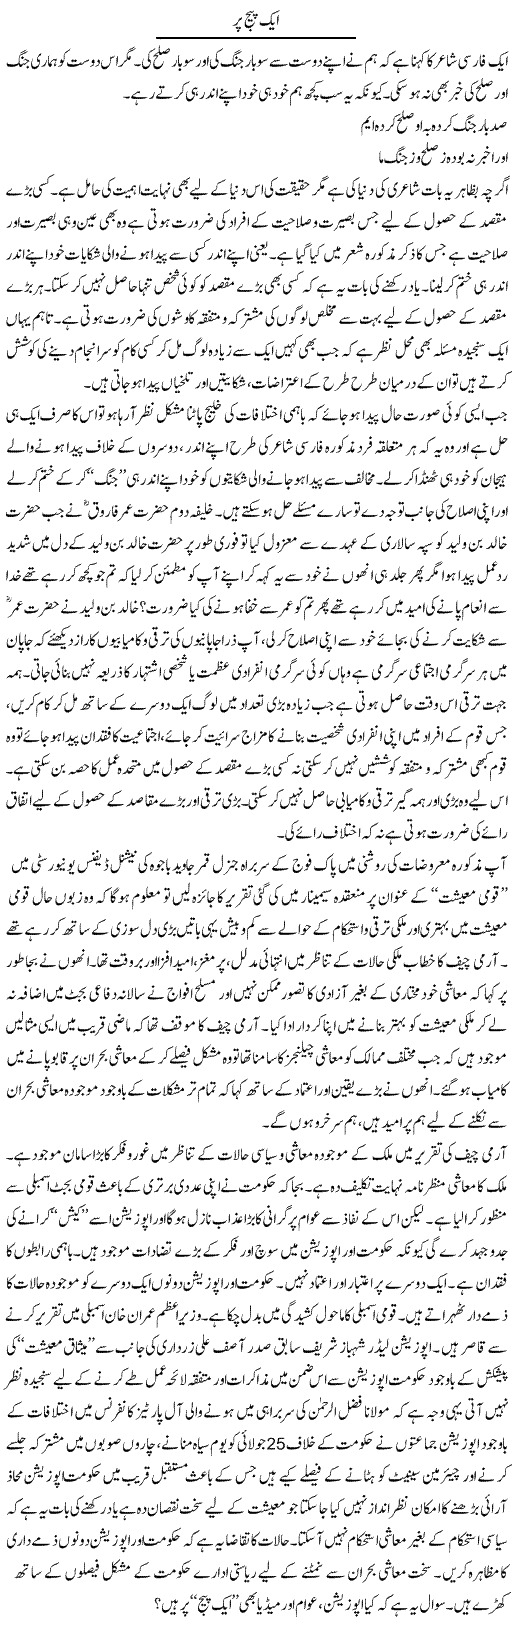 Aik Page Par | M.J Gohar | Daily Urdu Columns